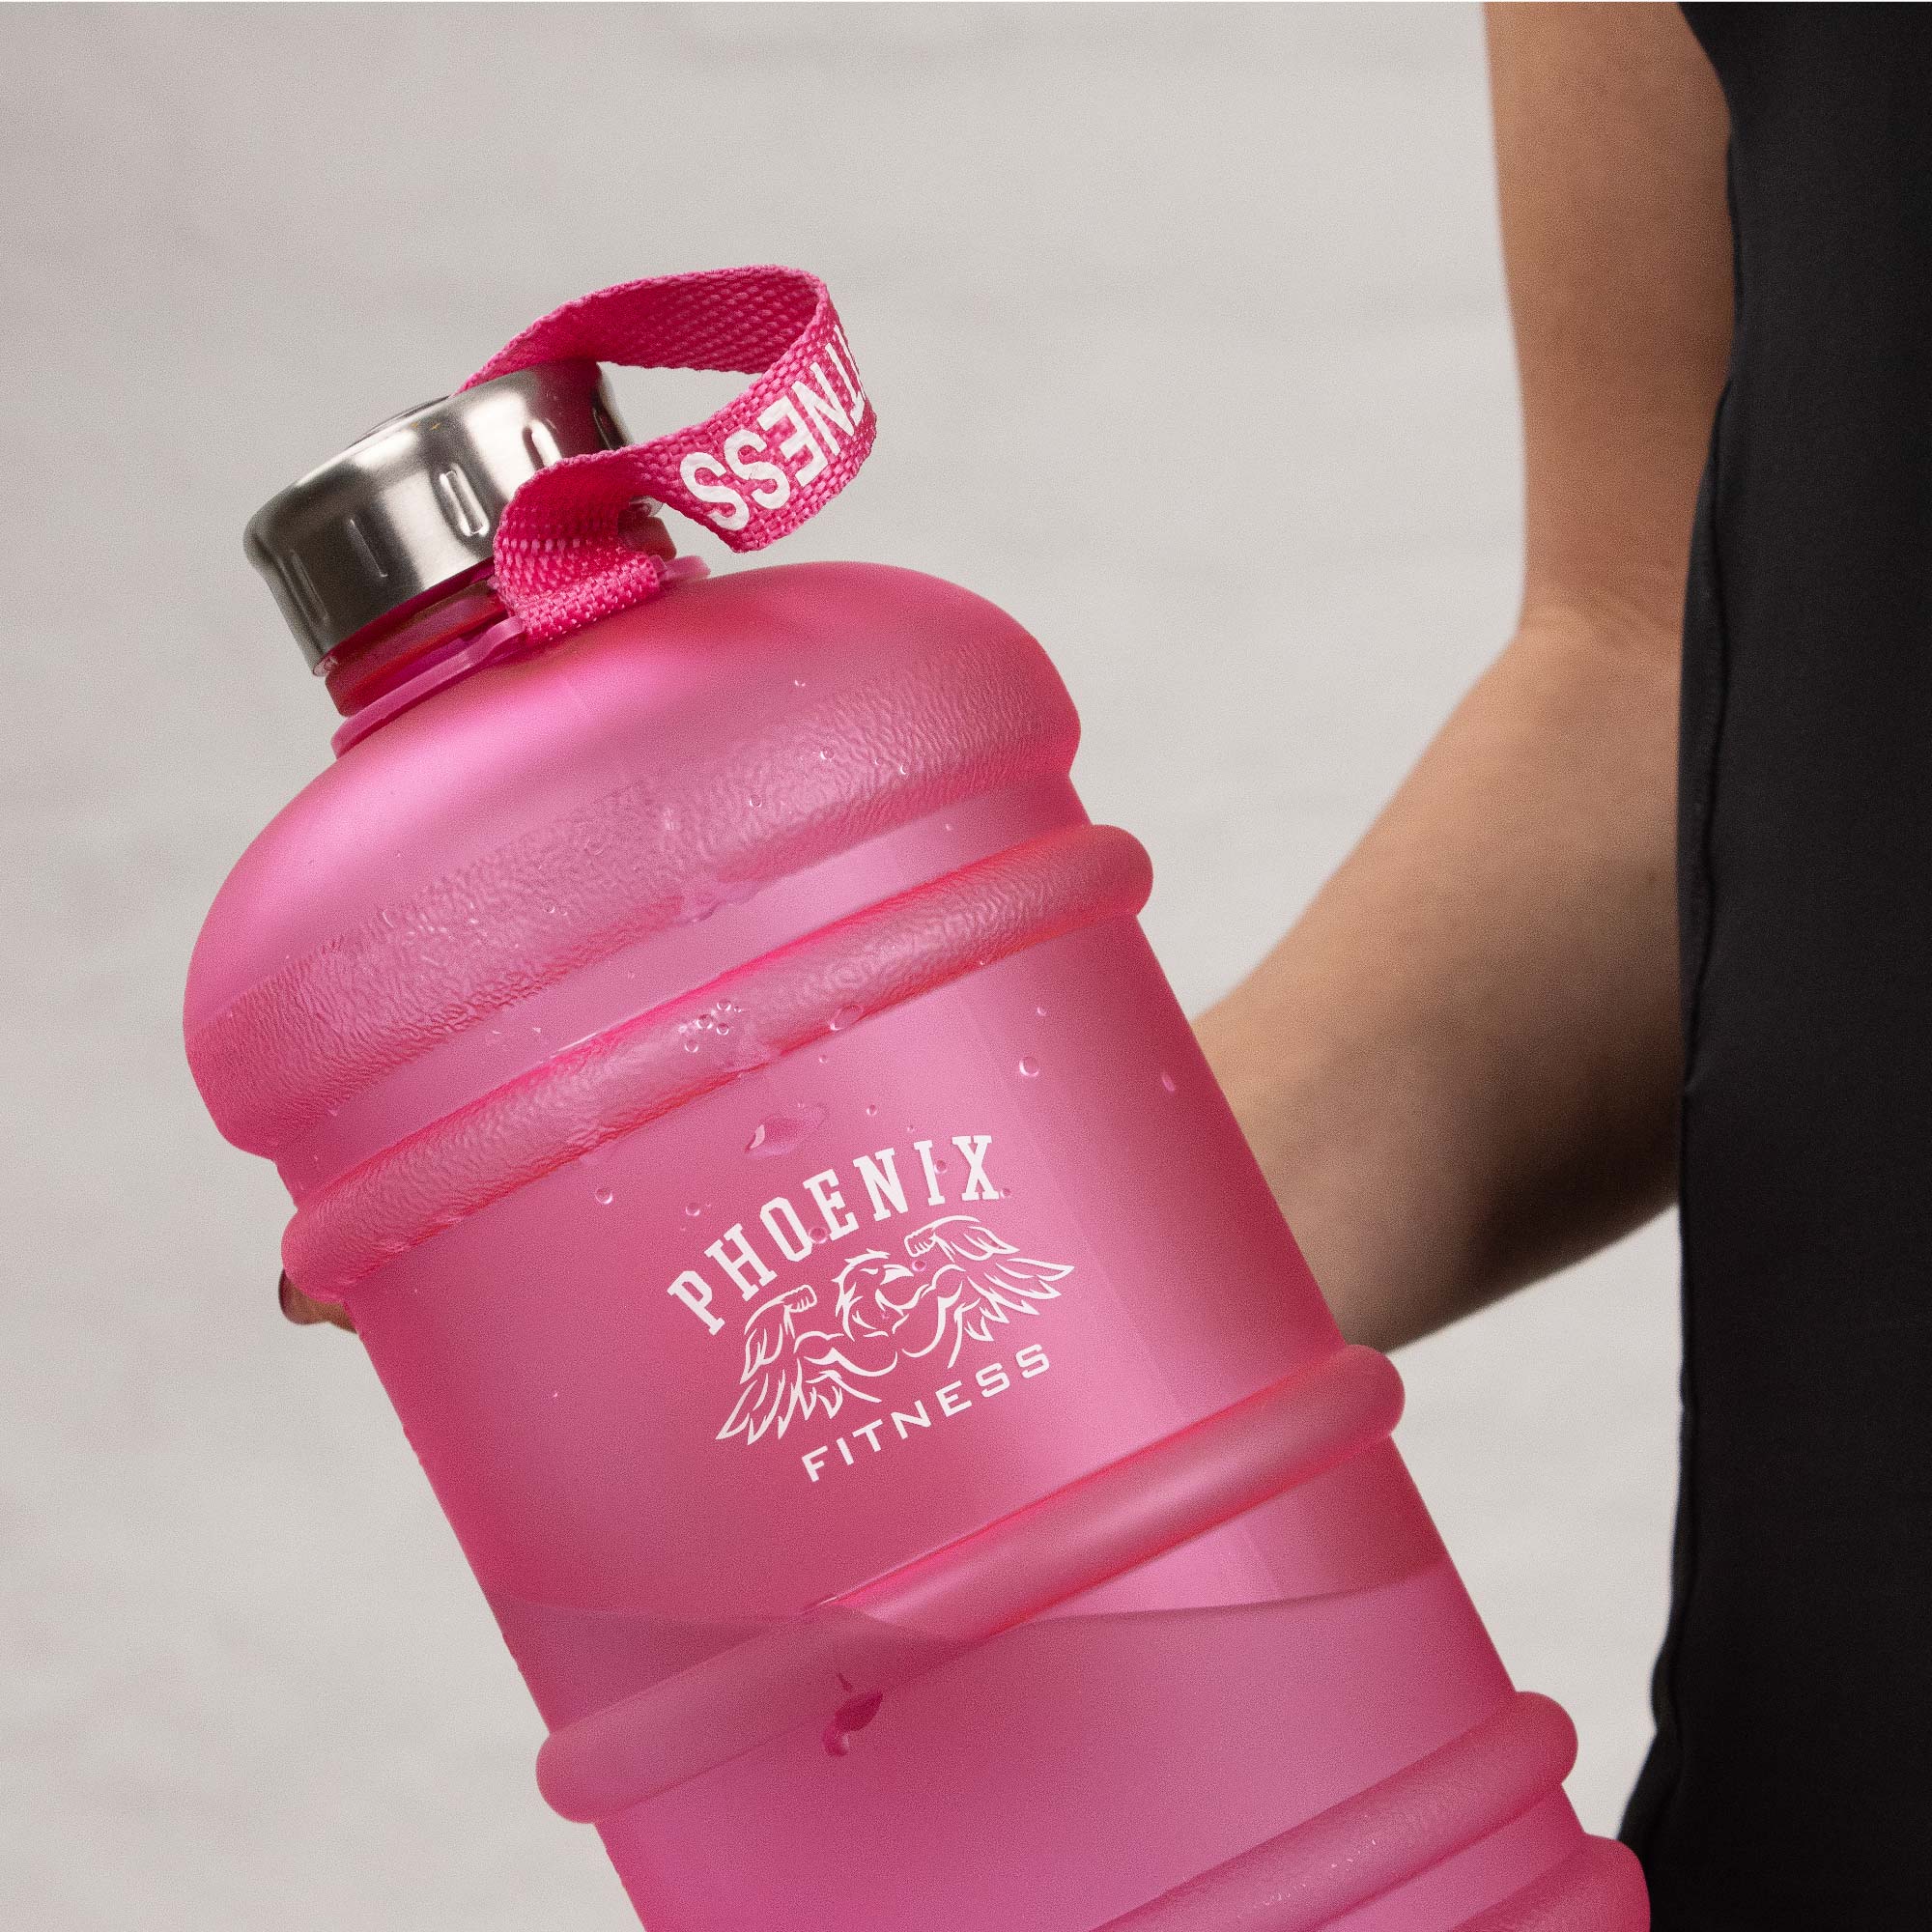 1L Gym Bottle - Pink